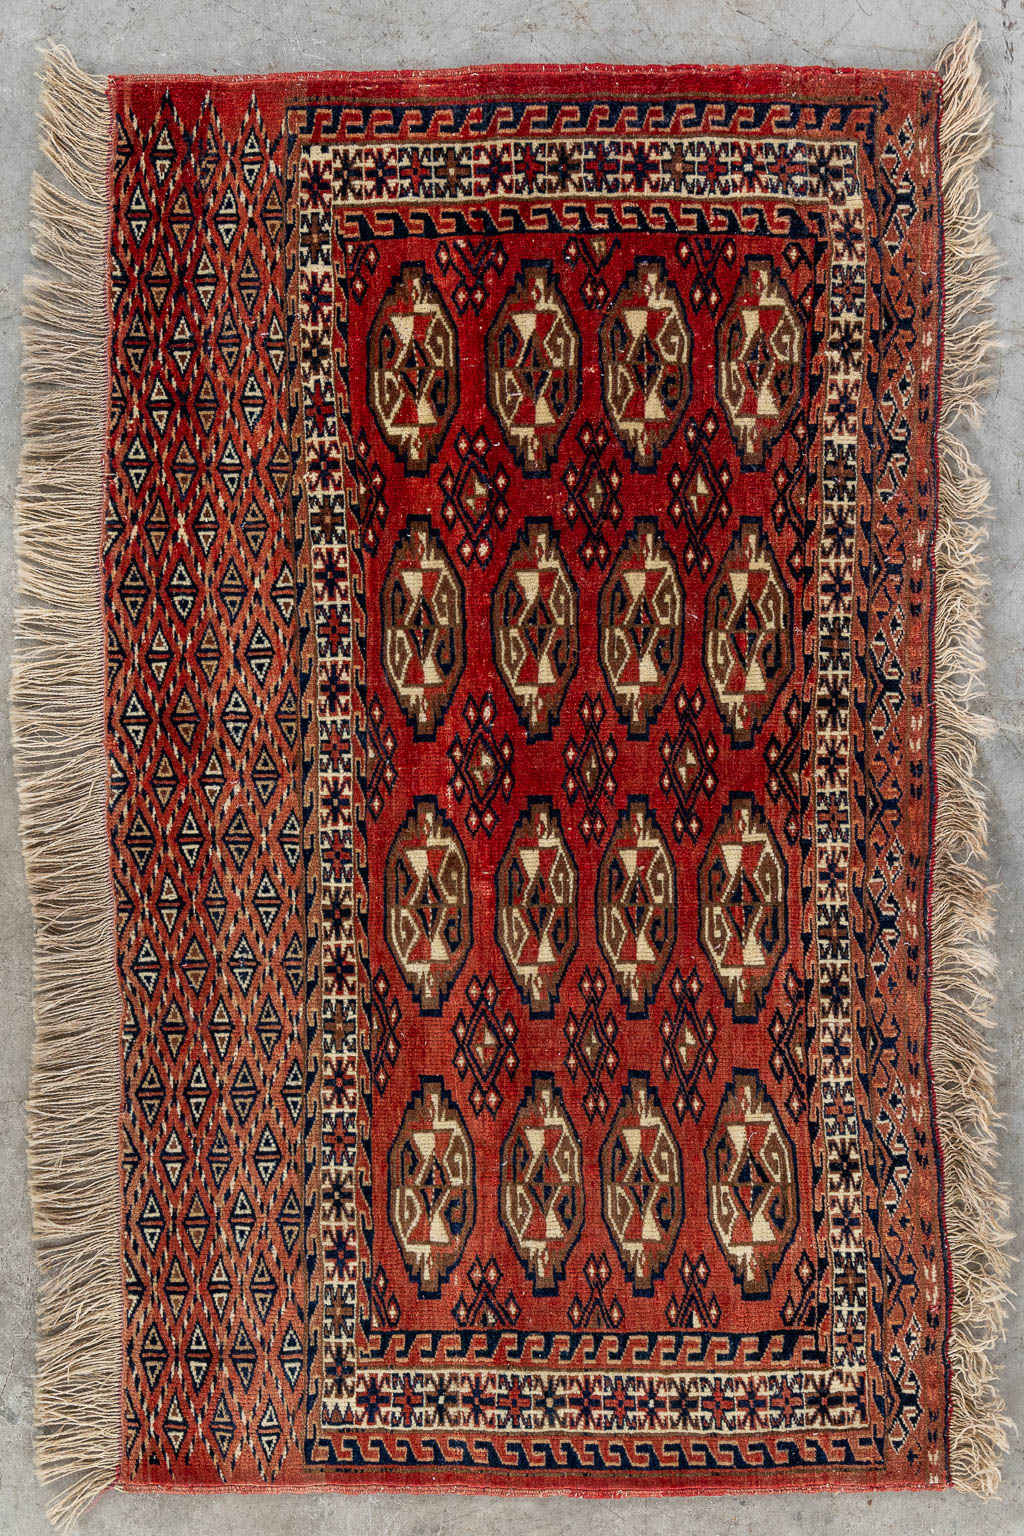 Lot 218 Een Oosters handgeknoopt tapijt, Turkman Yomut. (L:70 x W:117 cm)